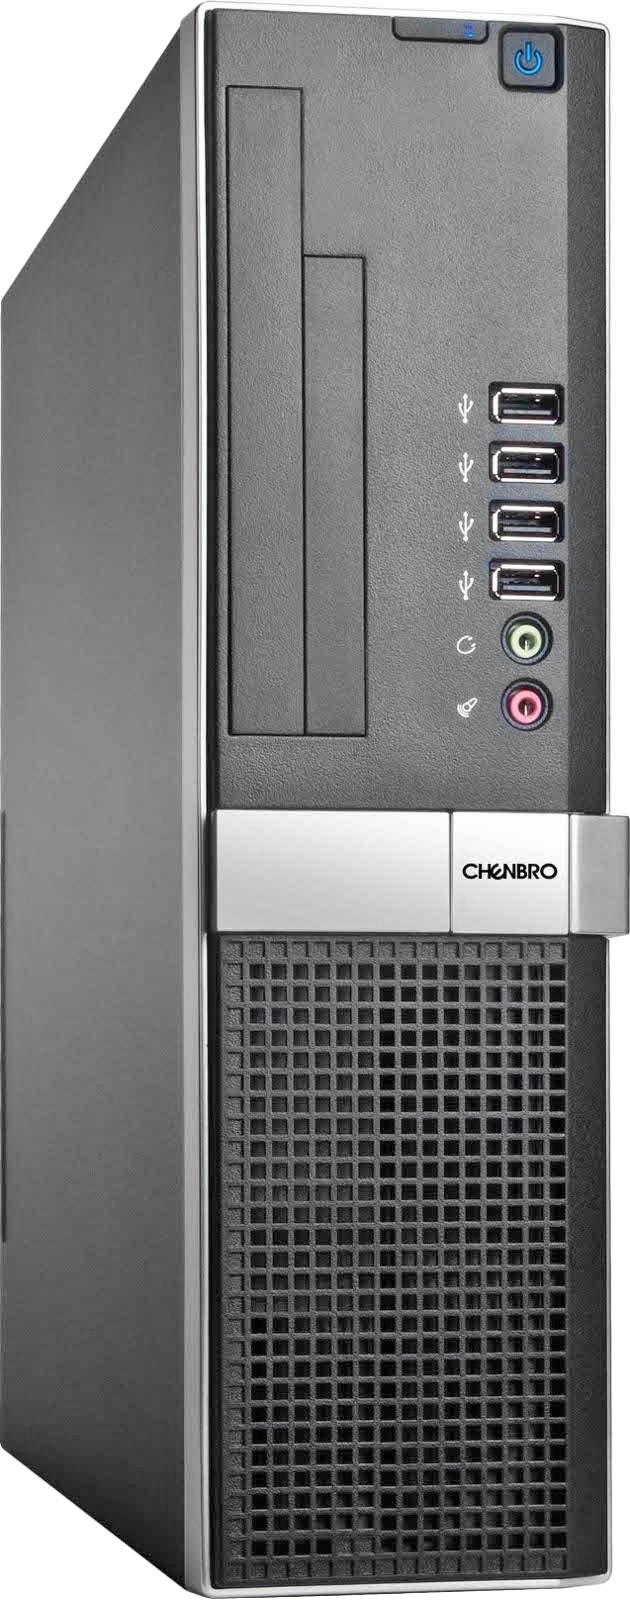 Chenbro PC72239 - зображення 1